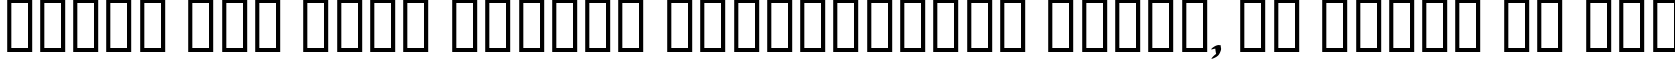 Пример написания шрифтом Malagua текста на русском